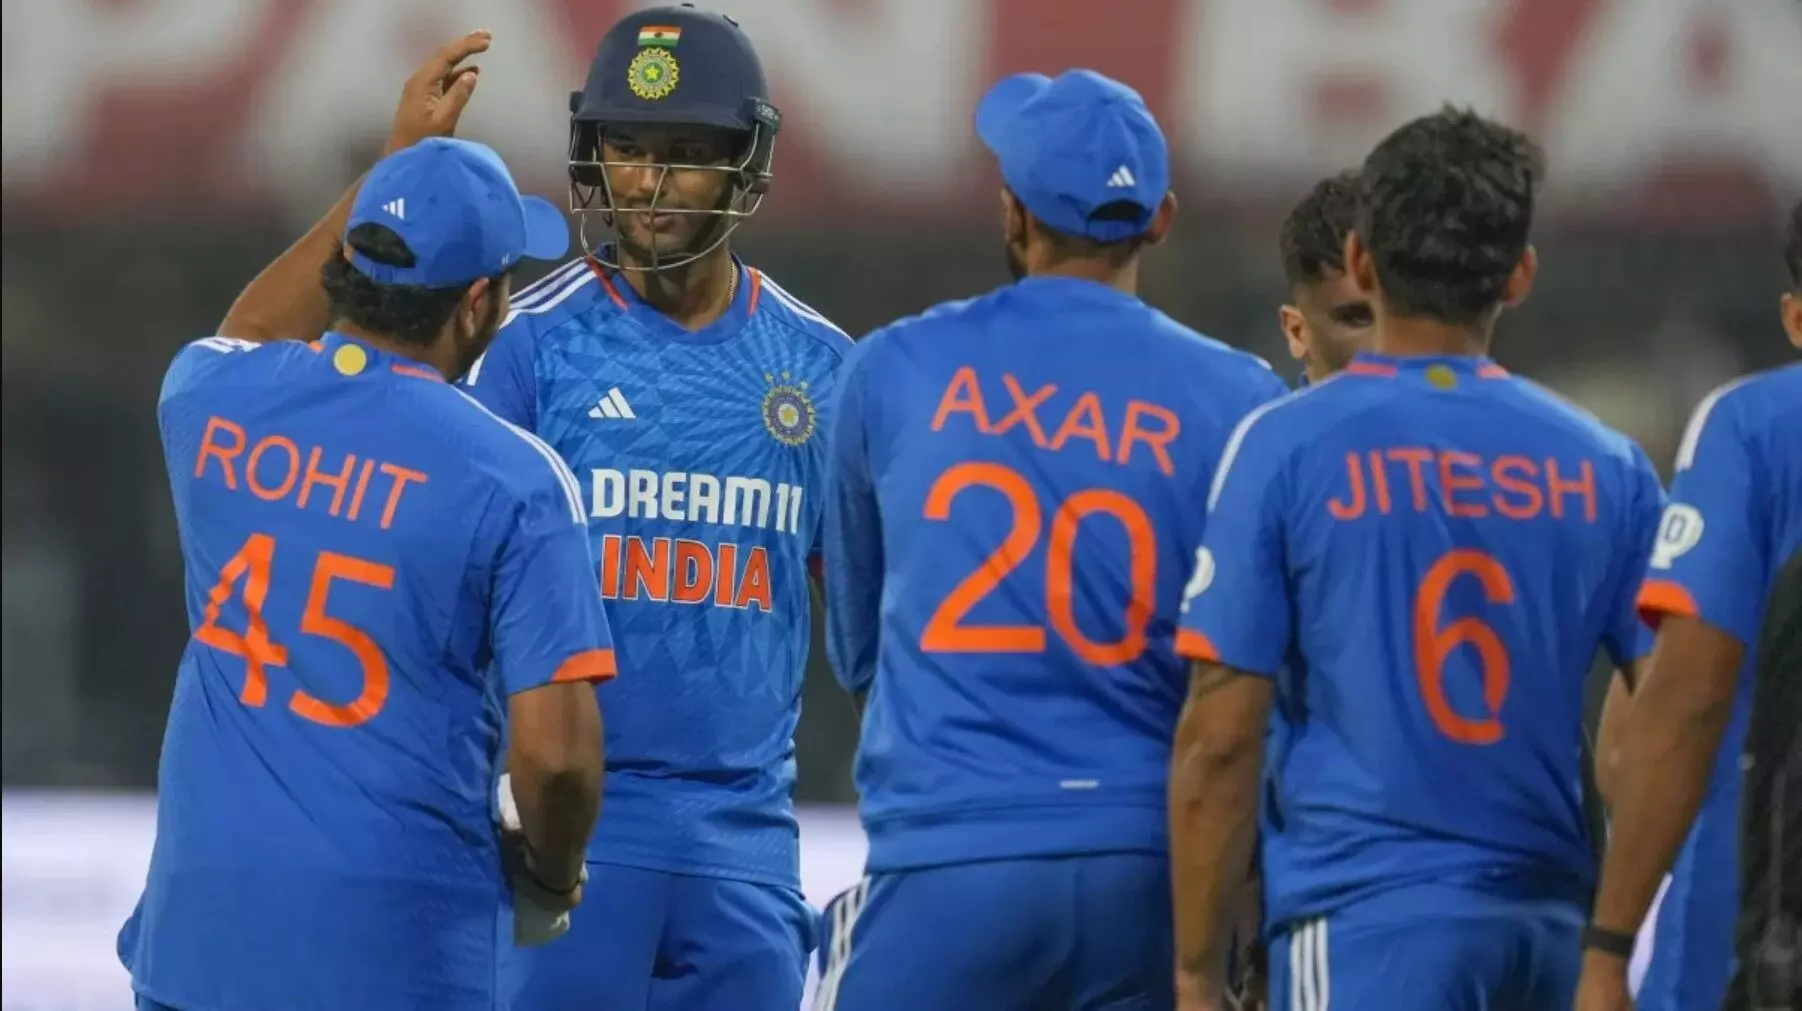 IND vs AFG: सीरीज जीतते ही गदगद हुए कप्तान रोहित शर्मा, इन 2 खिलाड़ियों की तारीफ में खोल दिया दिल